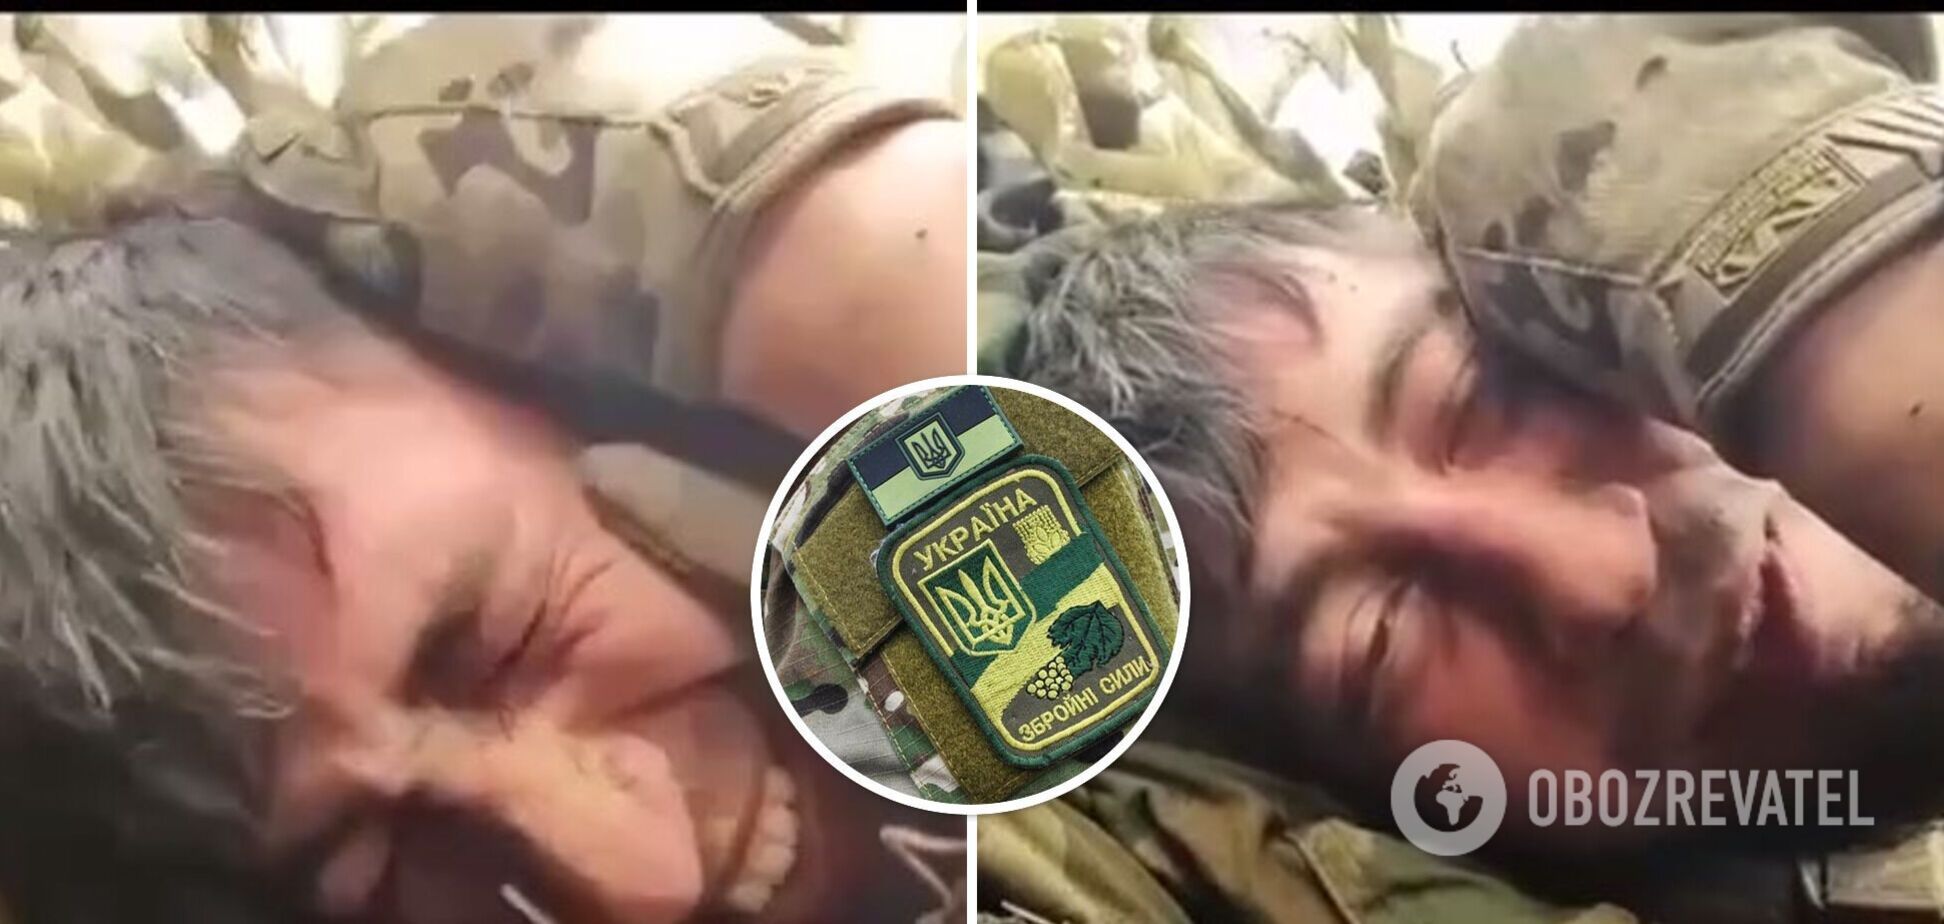 Український військовий привітав свого батька з днем народження під щільним обстрілом: відео розбурхало мережу